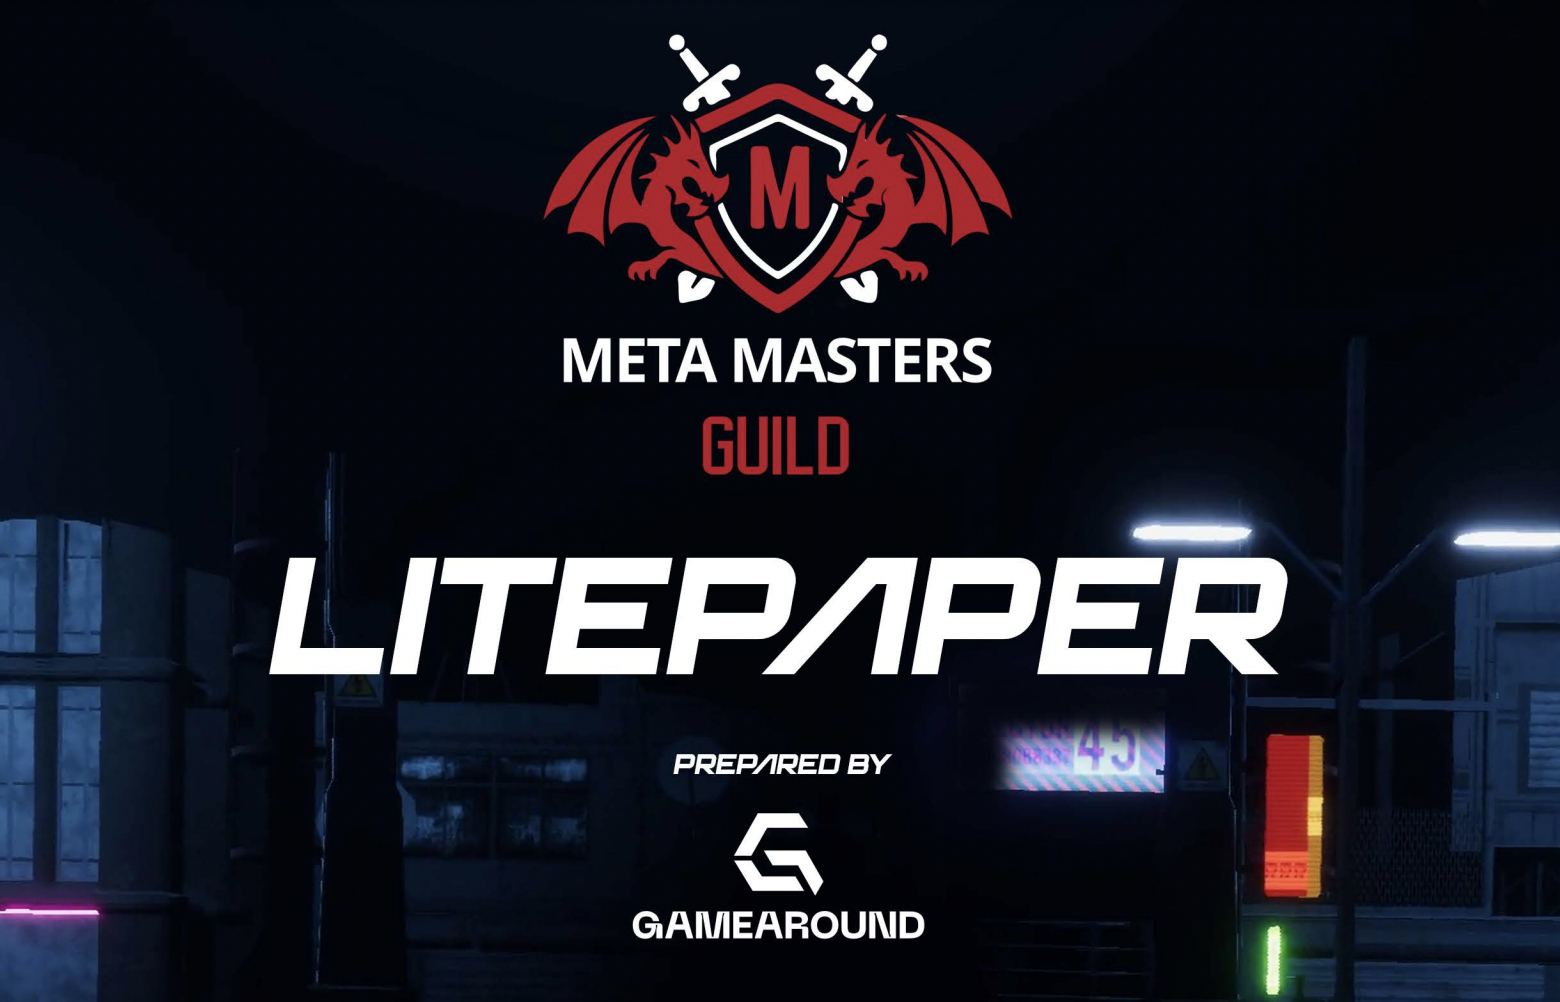 Meta Masters Guild litepaper